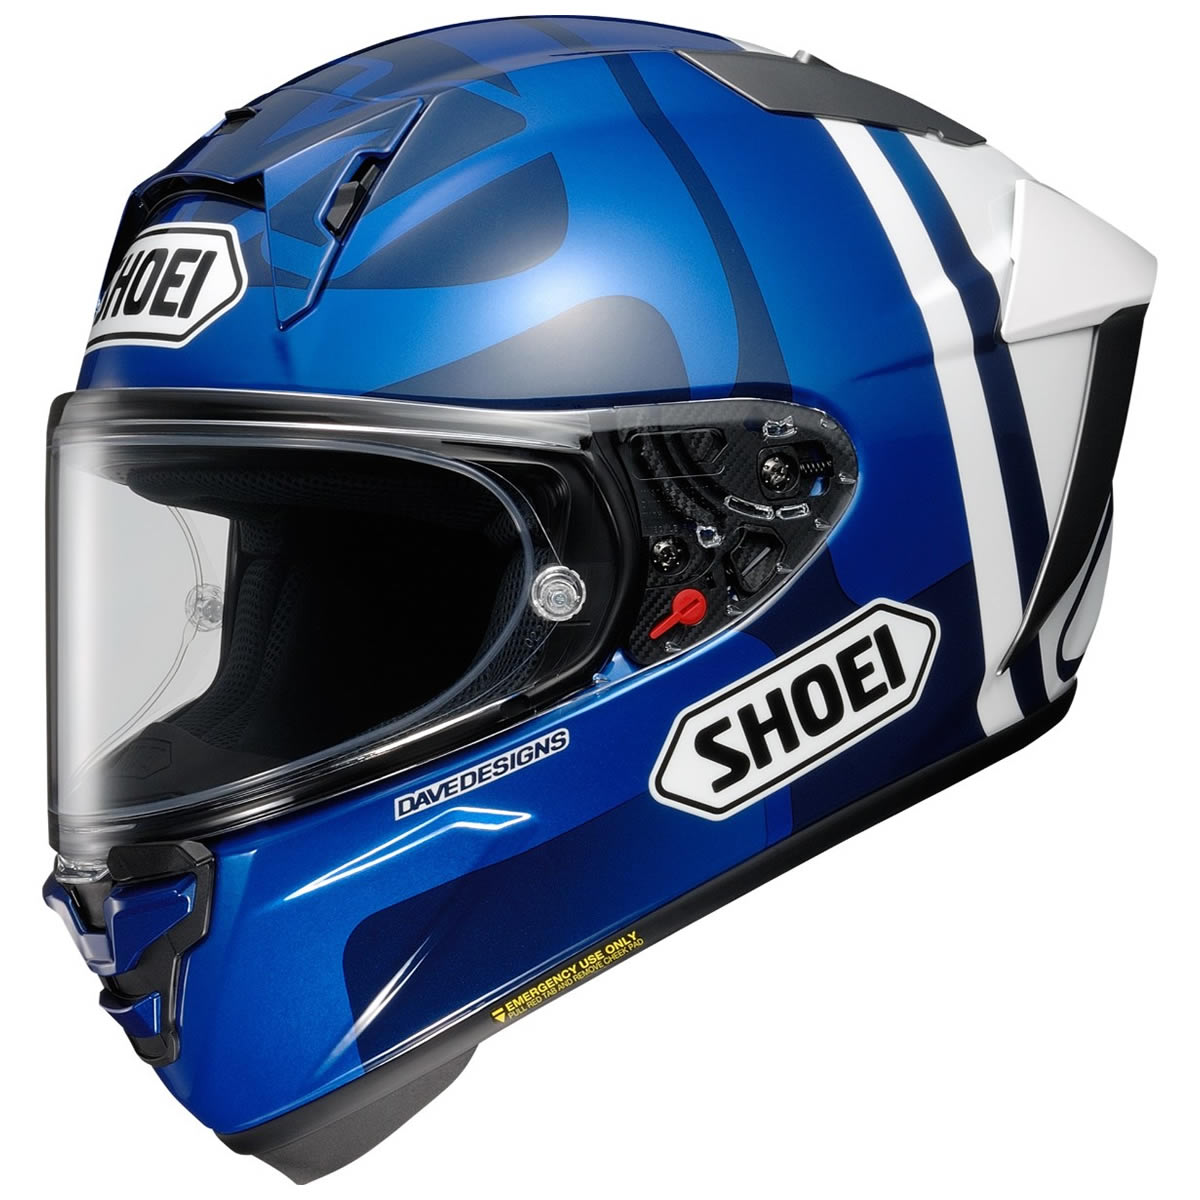 Shoei Helm X-SPR Pro A.Marquez73 V2